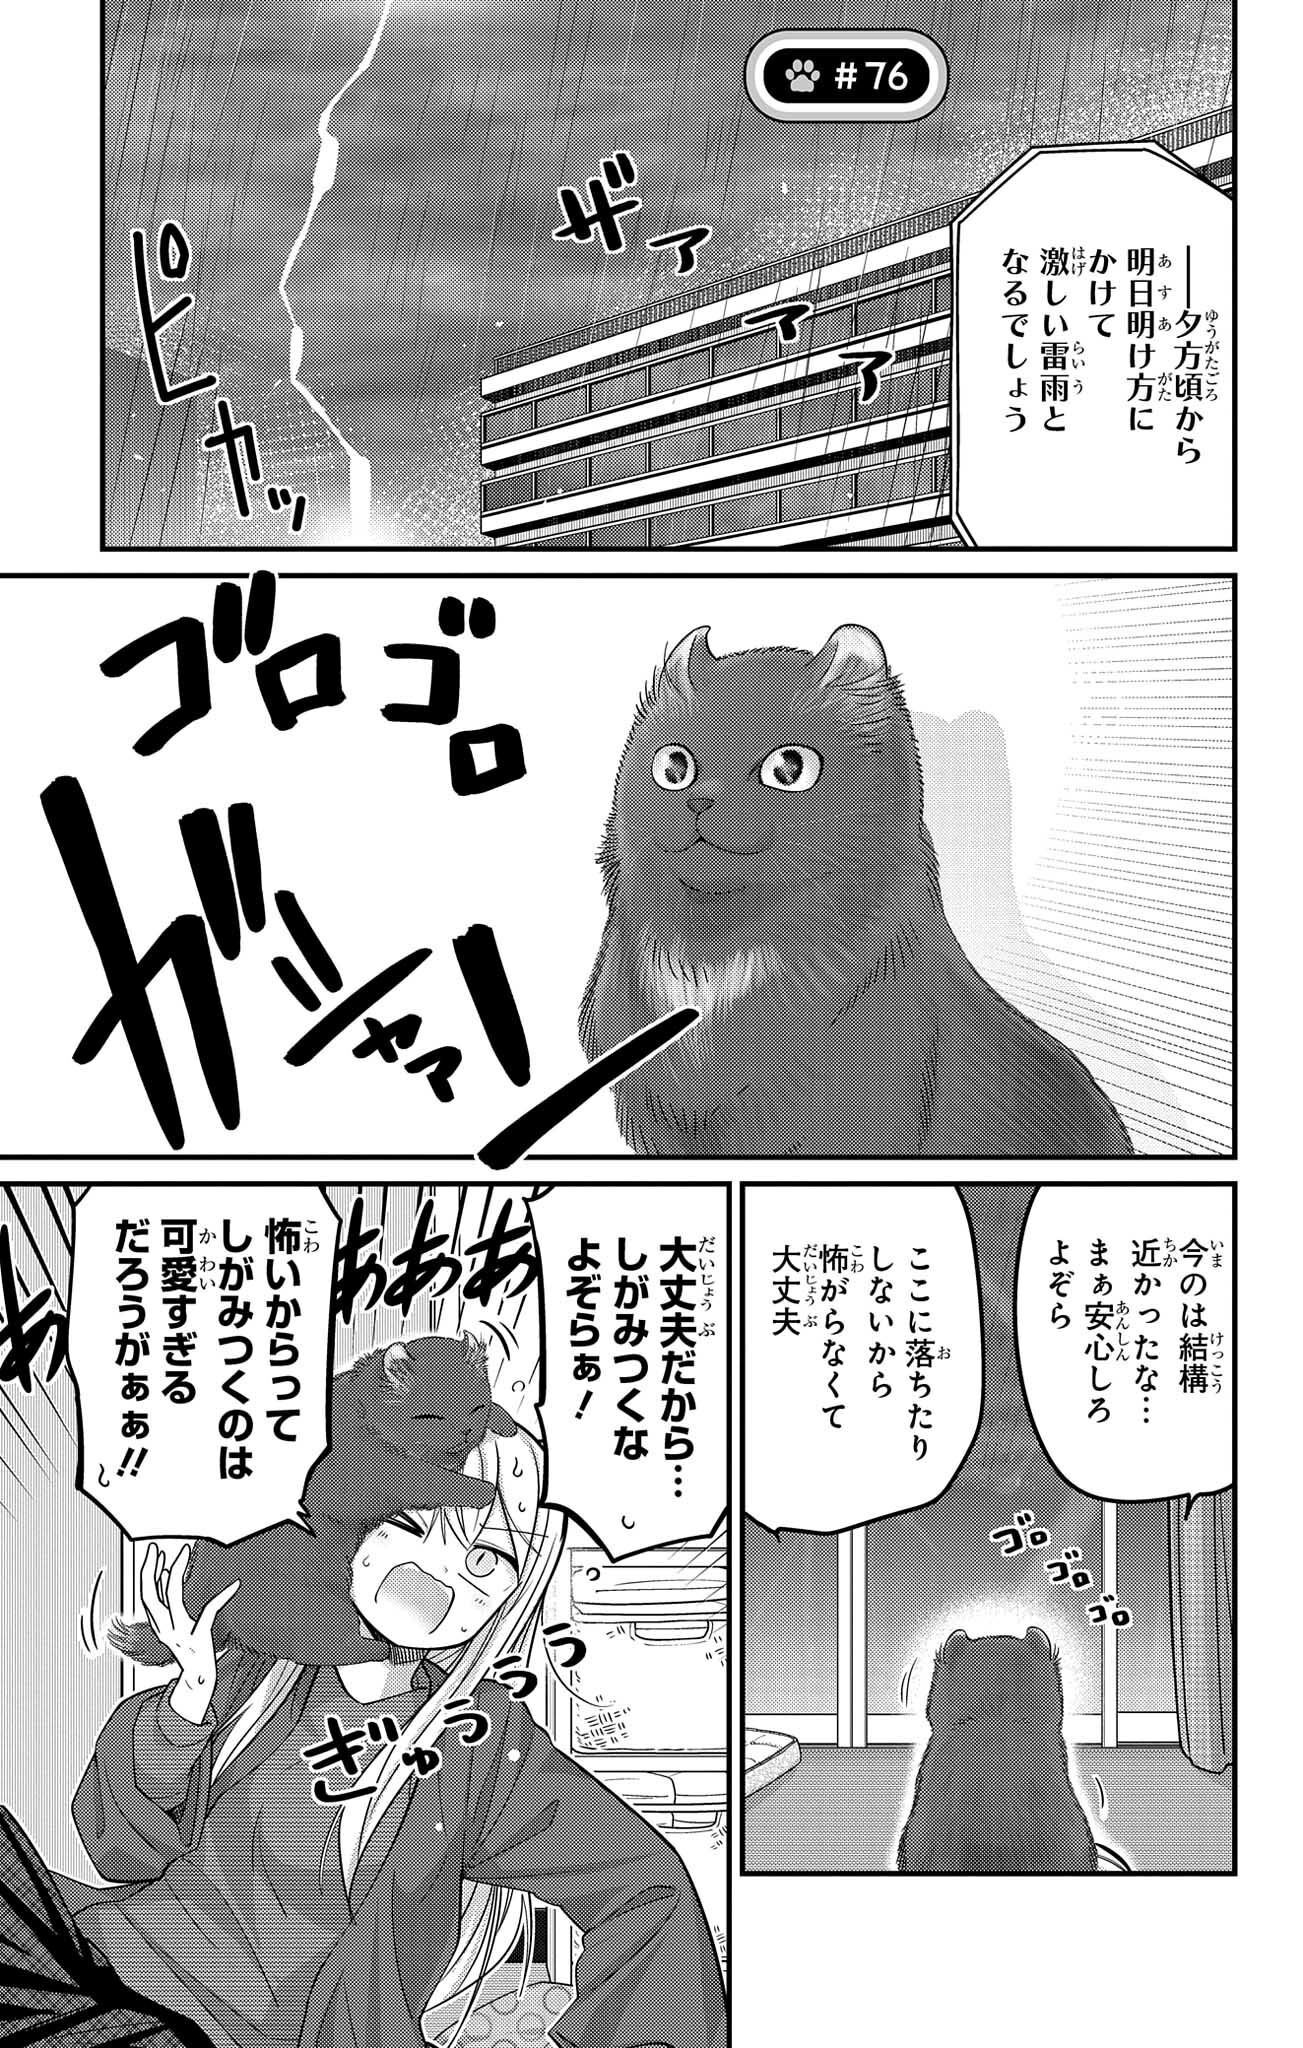 Kawaisugi Crisis - Chapter 76 - Page 1